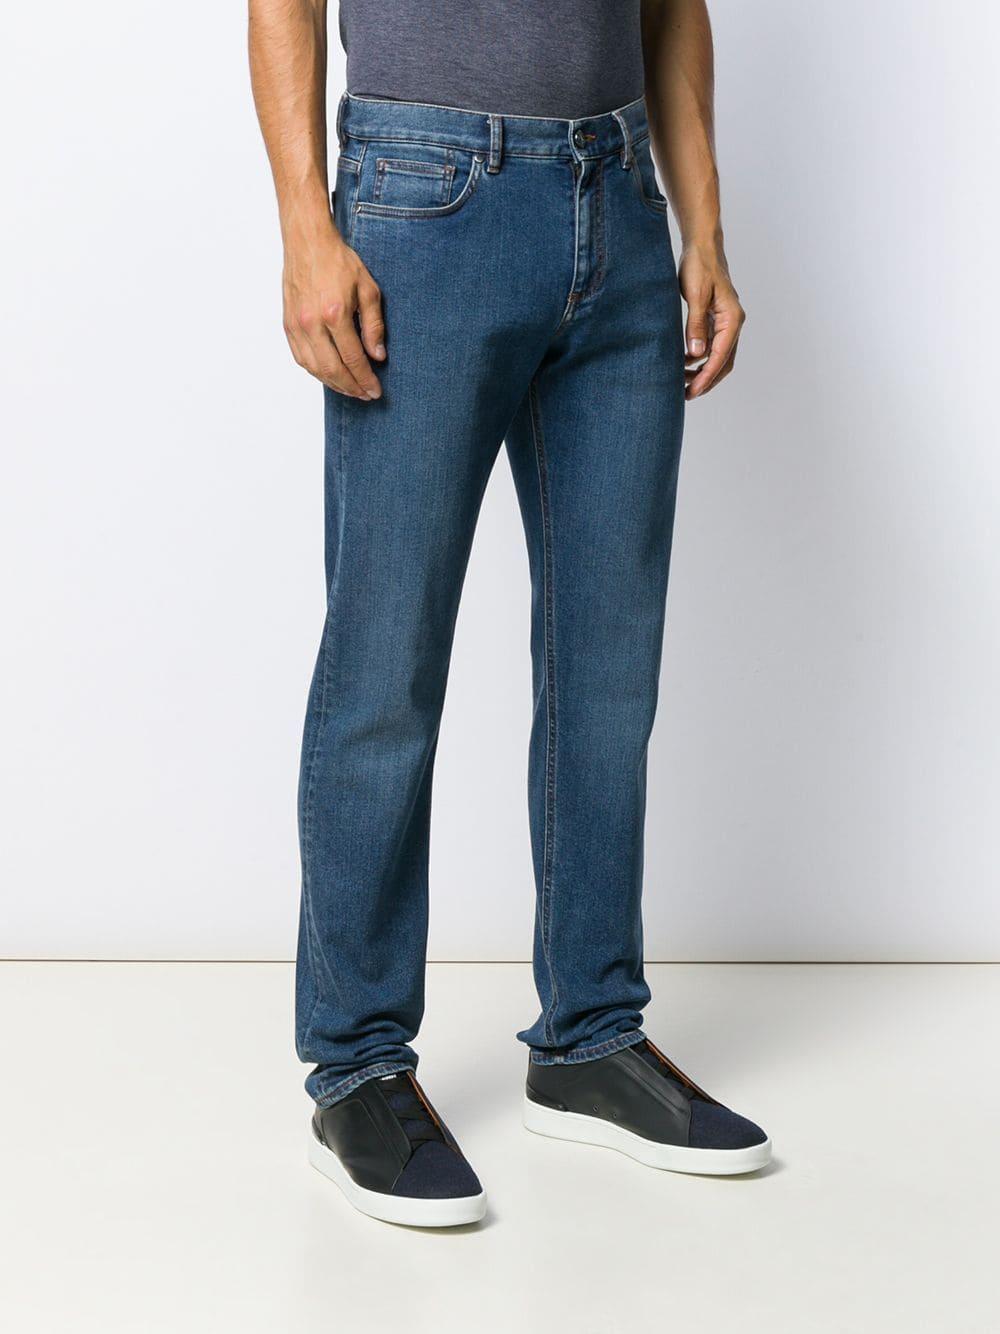 Ermenegildo Zegna Denim Regular Fit Jeans in Blue for Men - Lyst